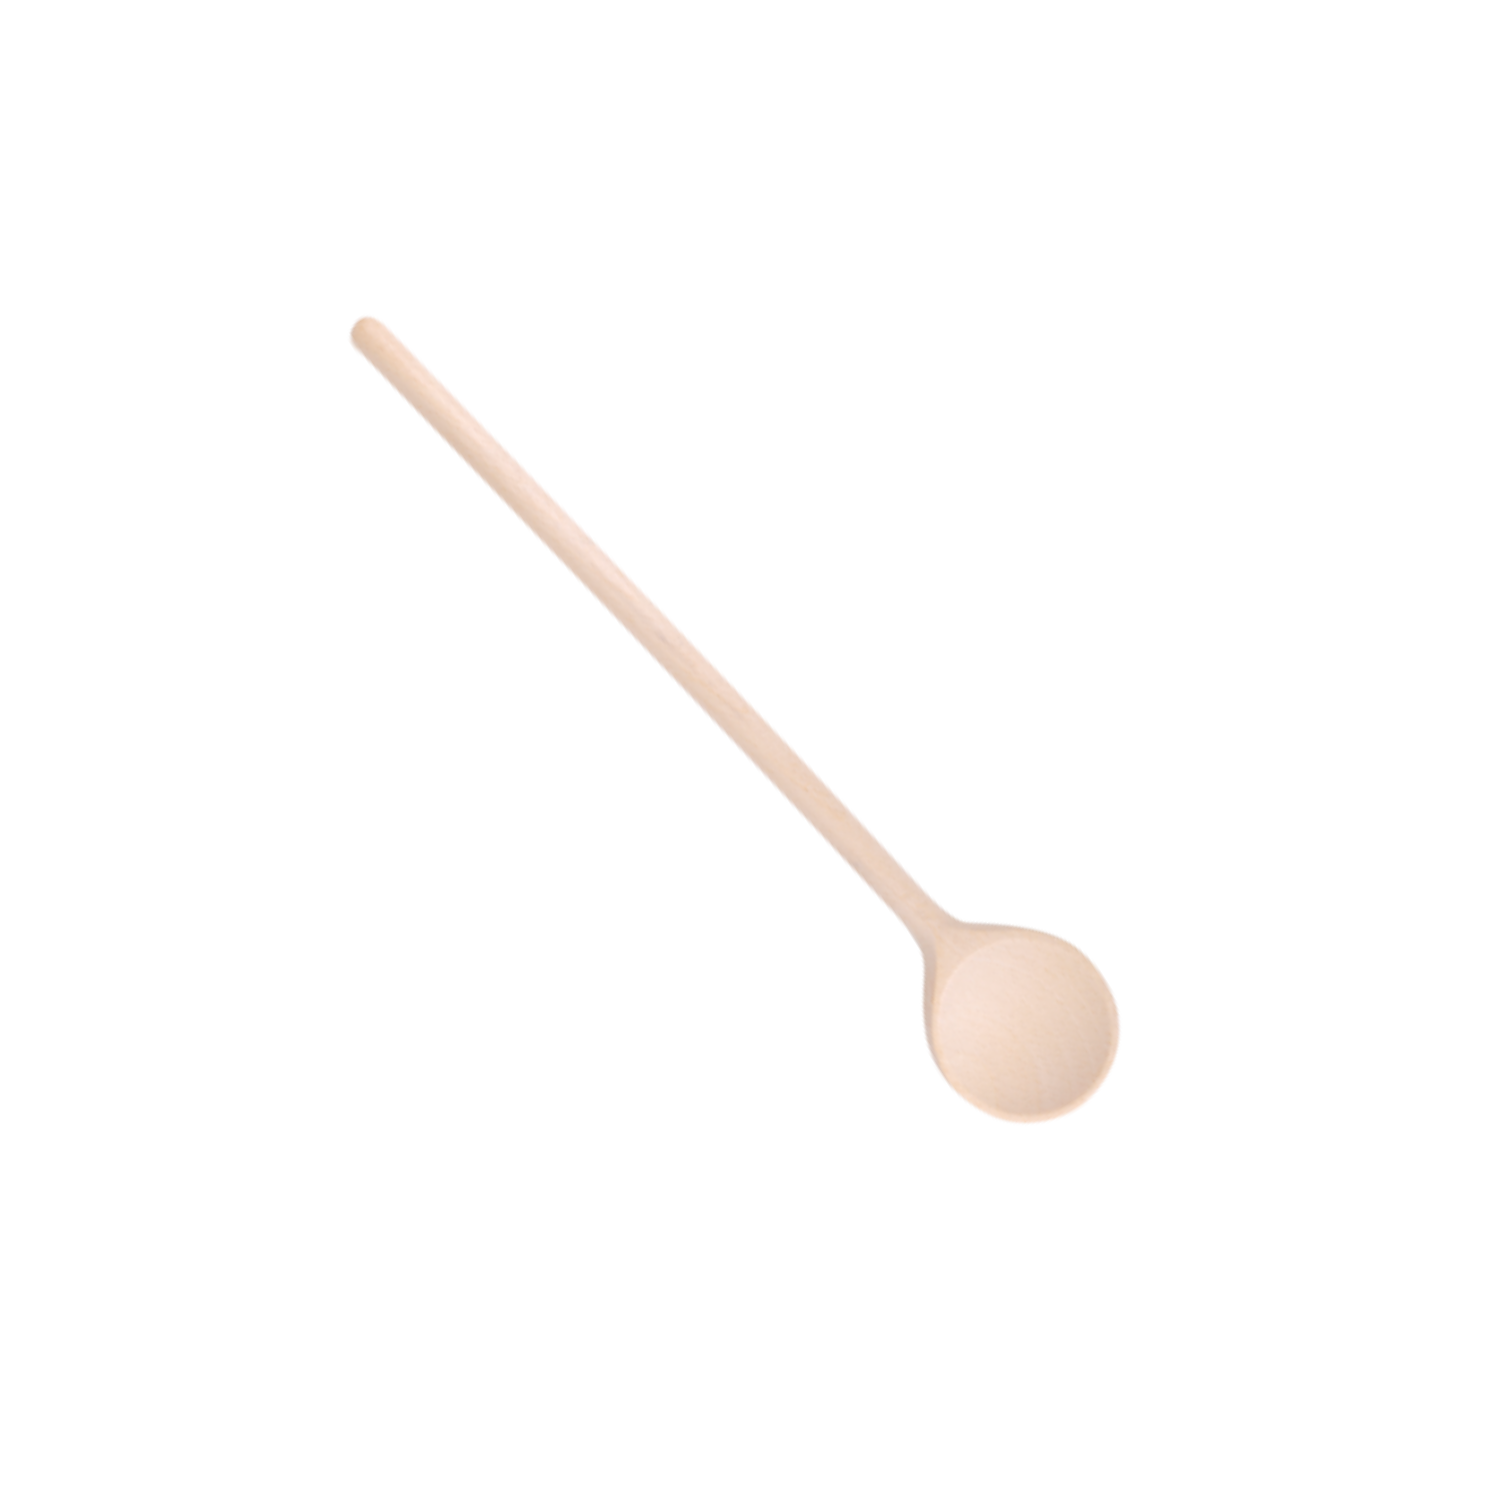 Beechwood Cooking Spoon